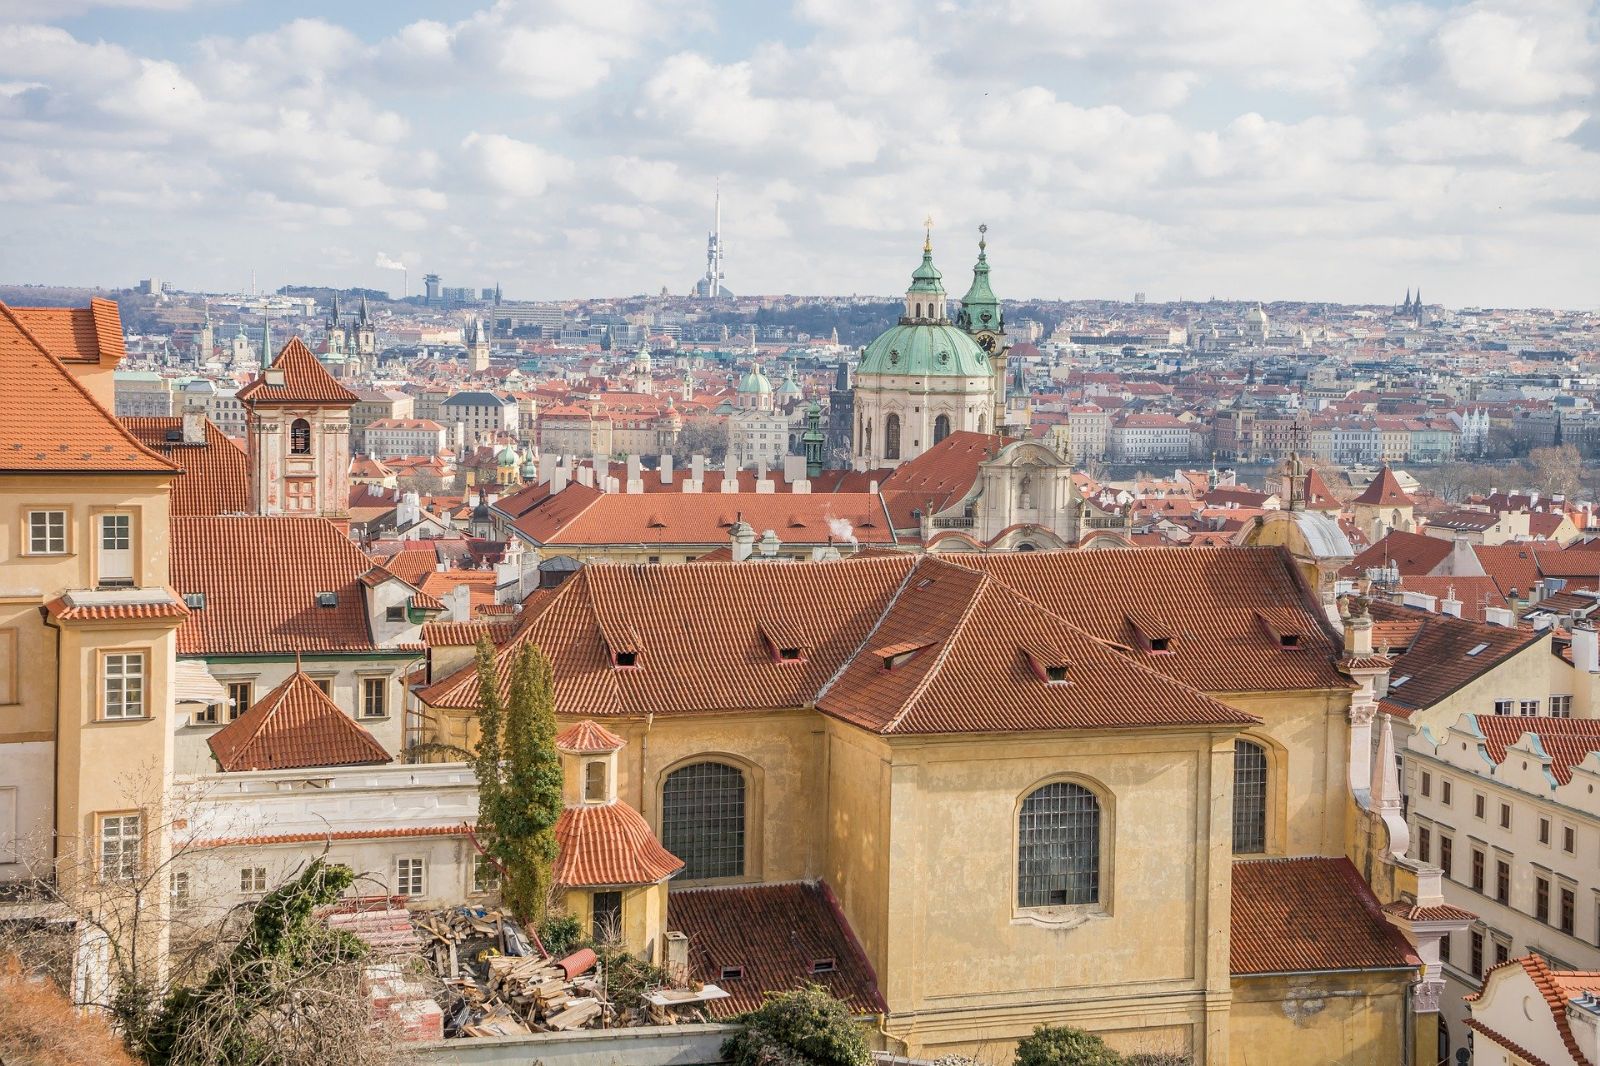 Priority Prahy do roku 2030: Rozvoj inovačního prostředí, podpora chytrého byznysu a vzdělávání